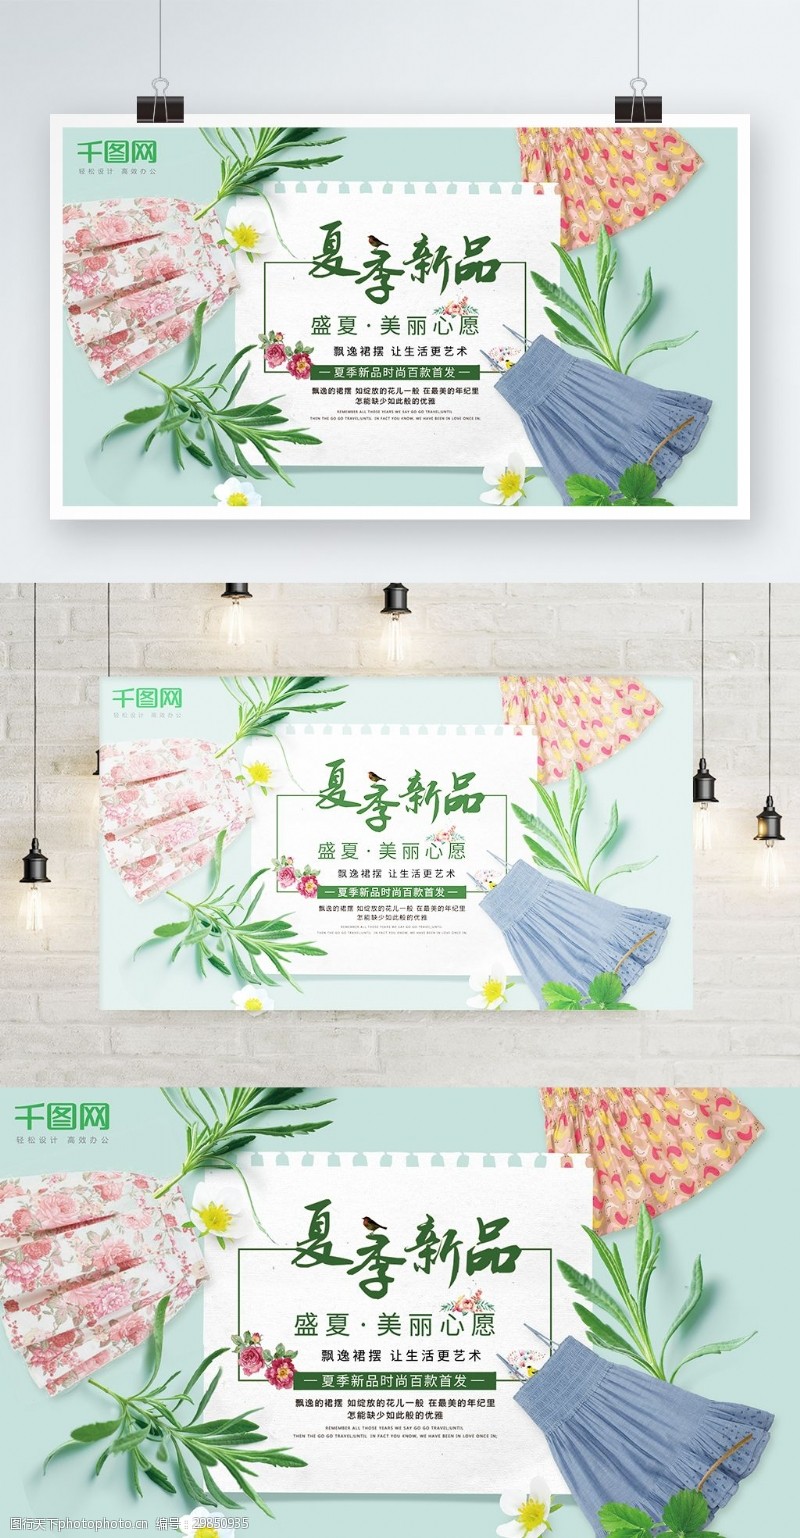 小清新韩风潮流时尚夏季促销女装电商海报